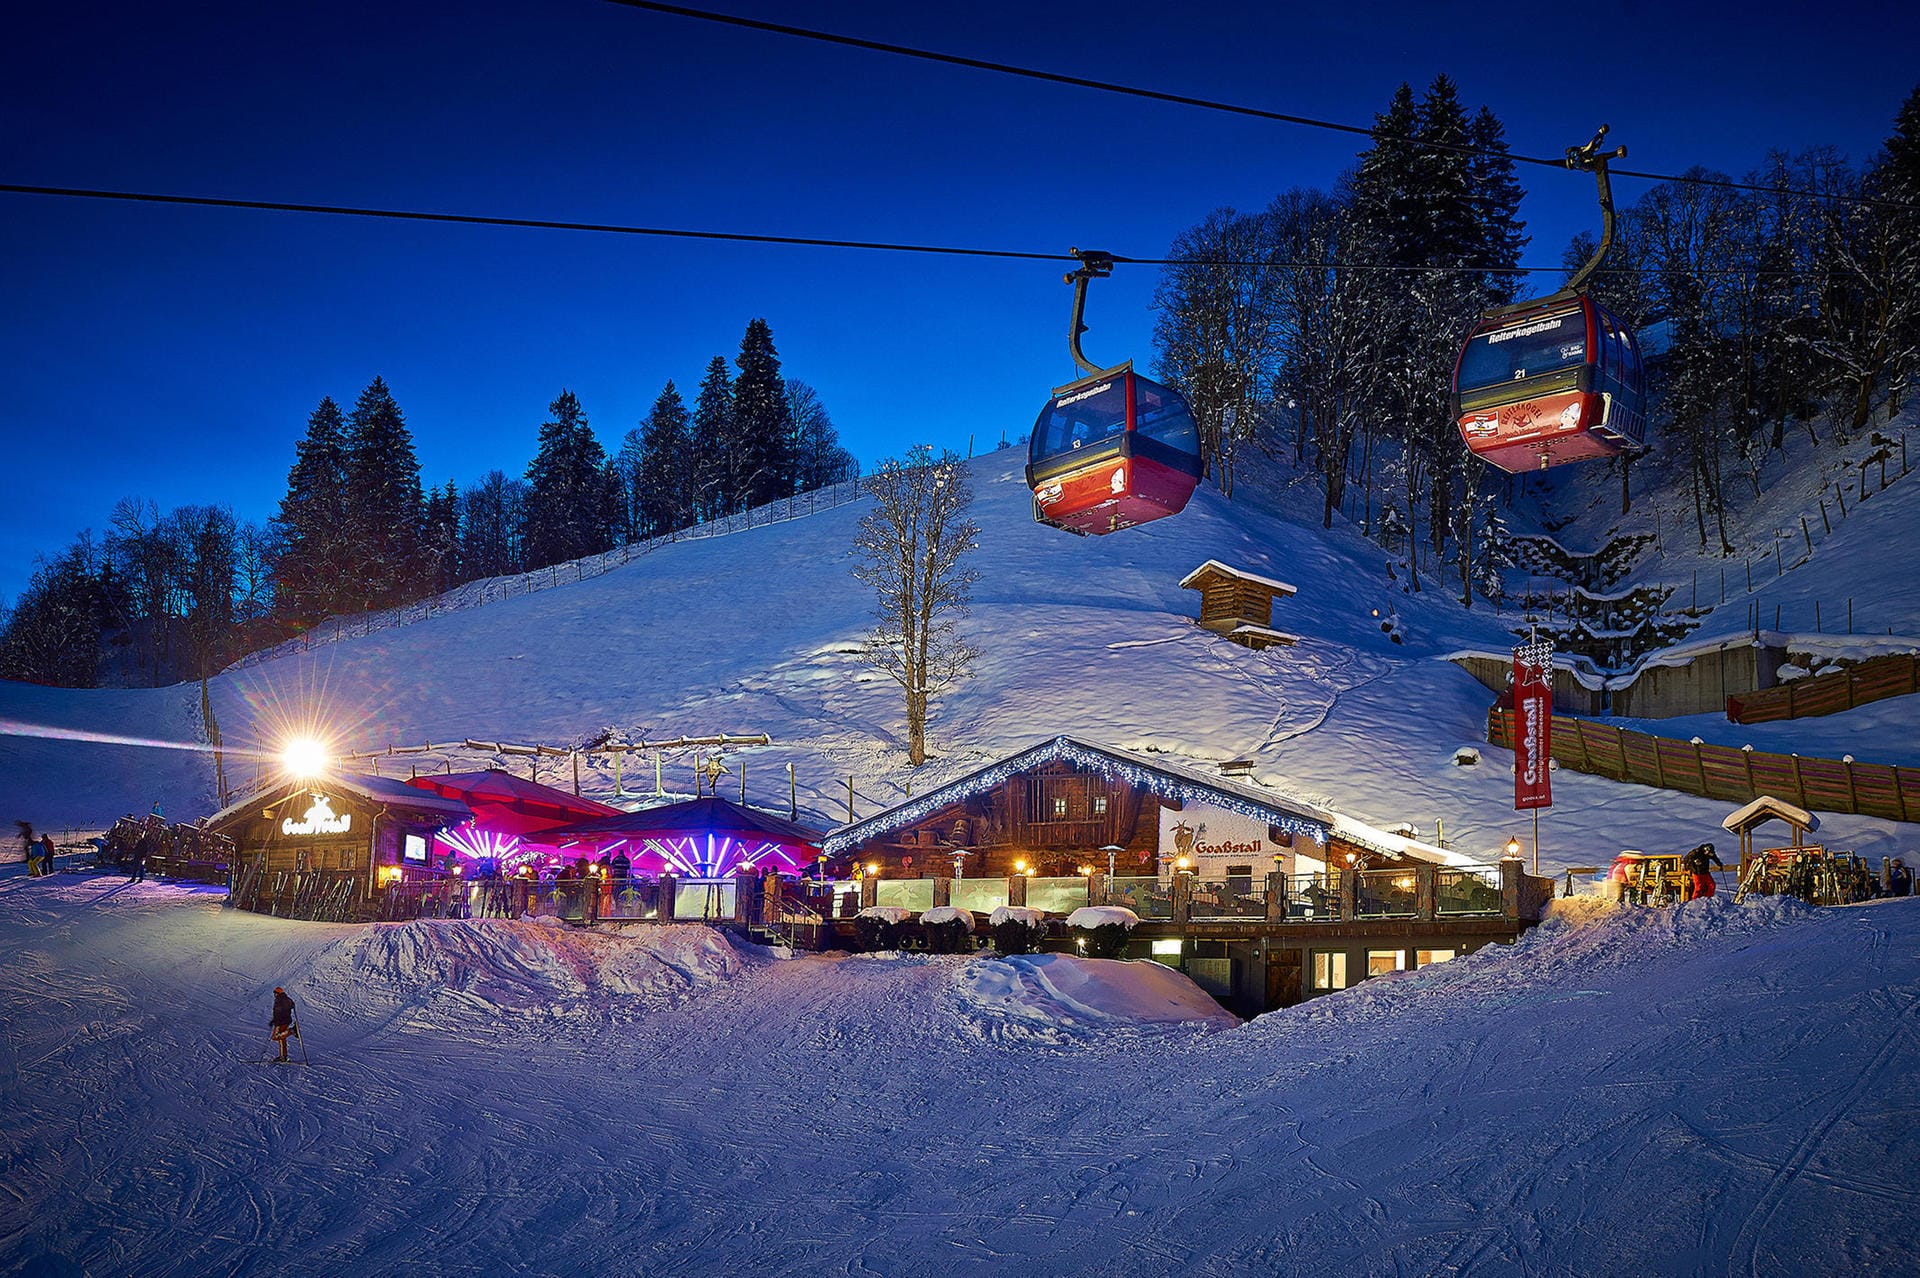 Im "Goaßstall", der wohl urigsten Hütte in Saalbach-Hinterglemm, geht es lebhaft zu. Sie gilt als der Treffpunkt im Skigebiet und zieht die Gäste in Scharen an. Jeder Tag steht ein neues Event auf dem Programm.